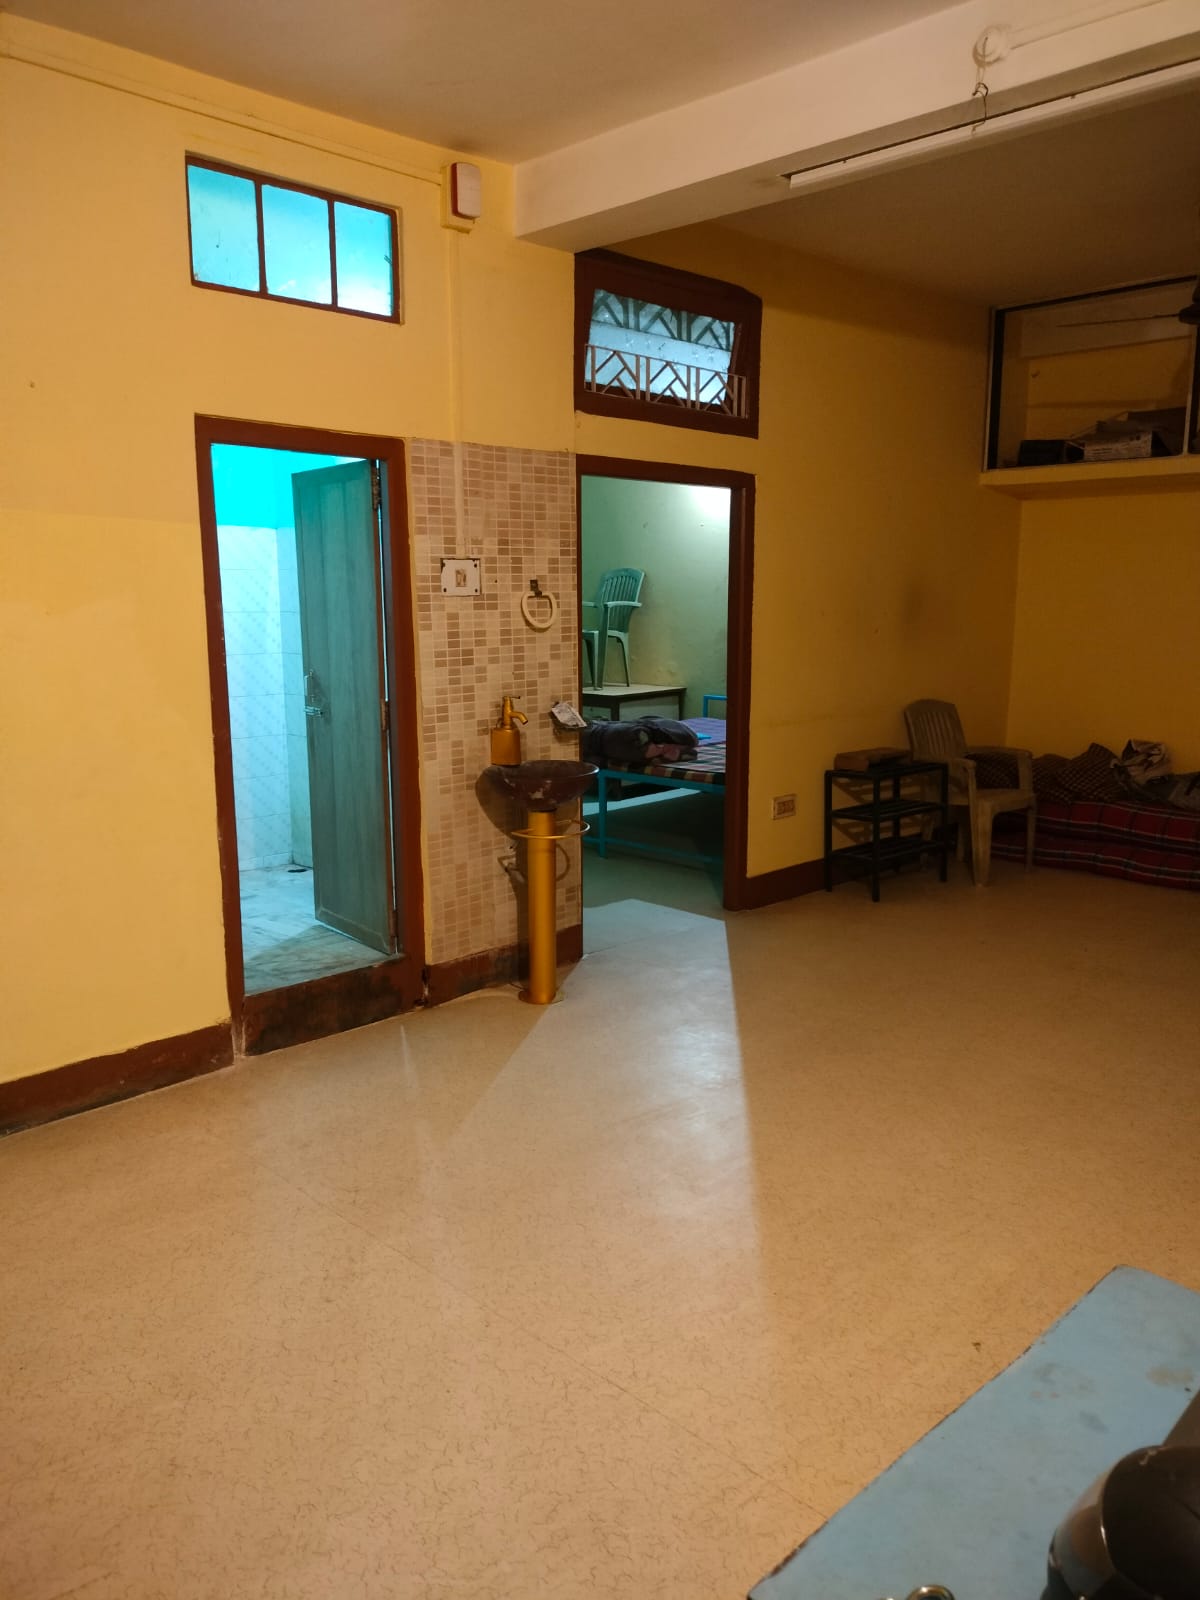 2 bedroom rent house at Graham bazaar in Dibrugarh under 12k